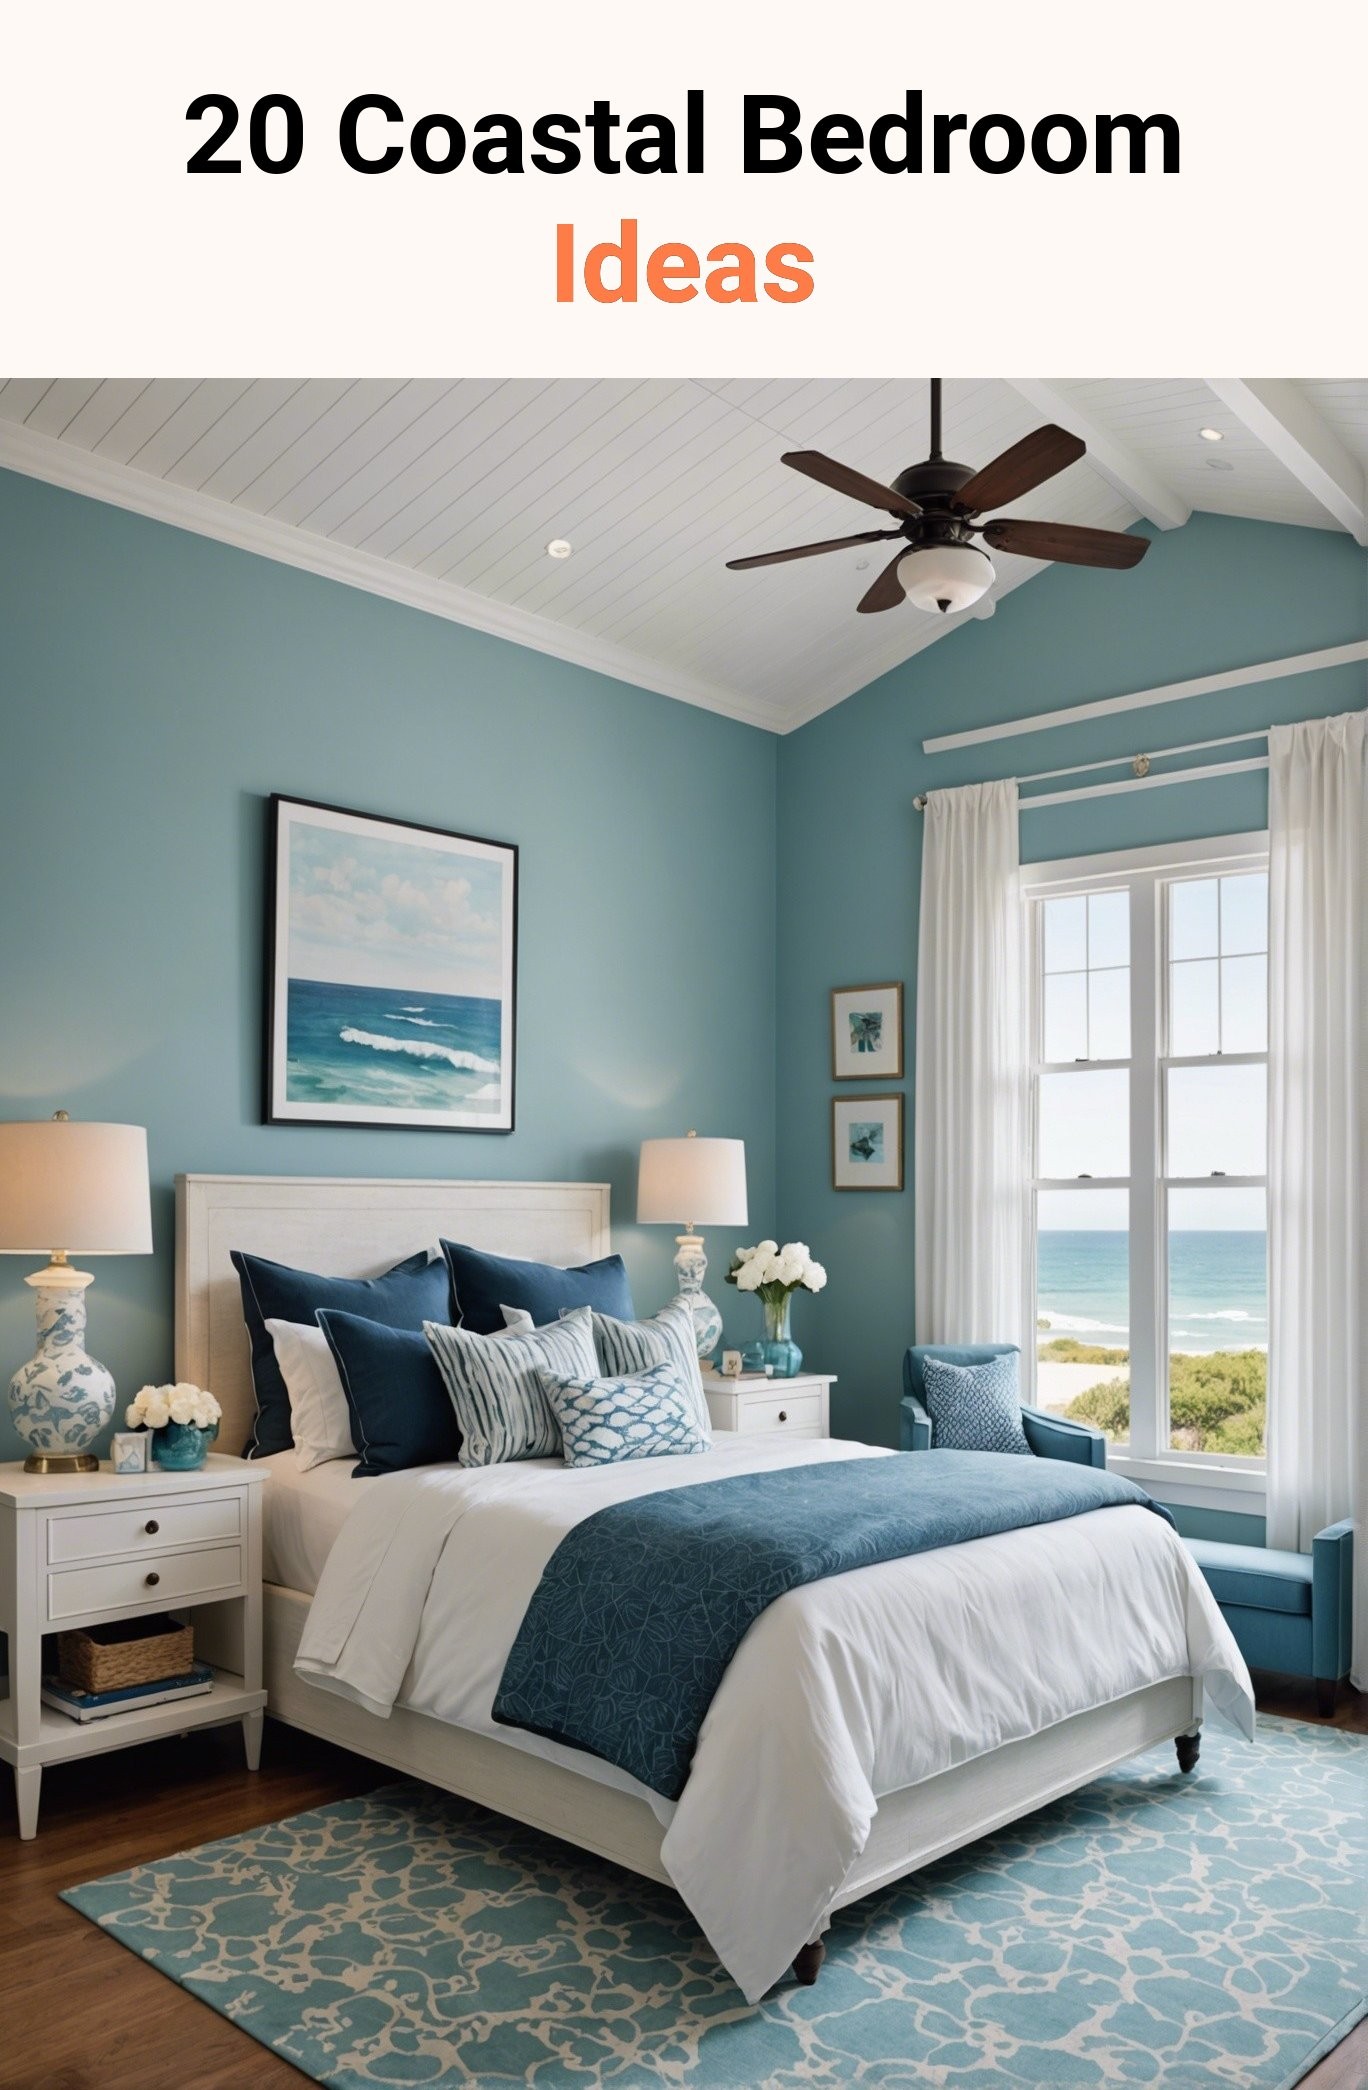 20 Coastal Bedroom Ideas